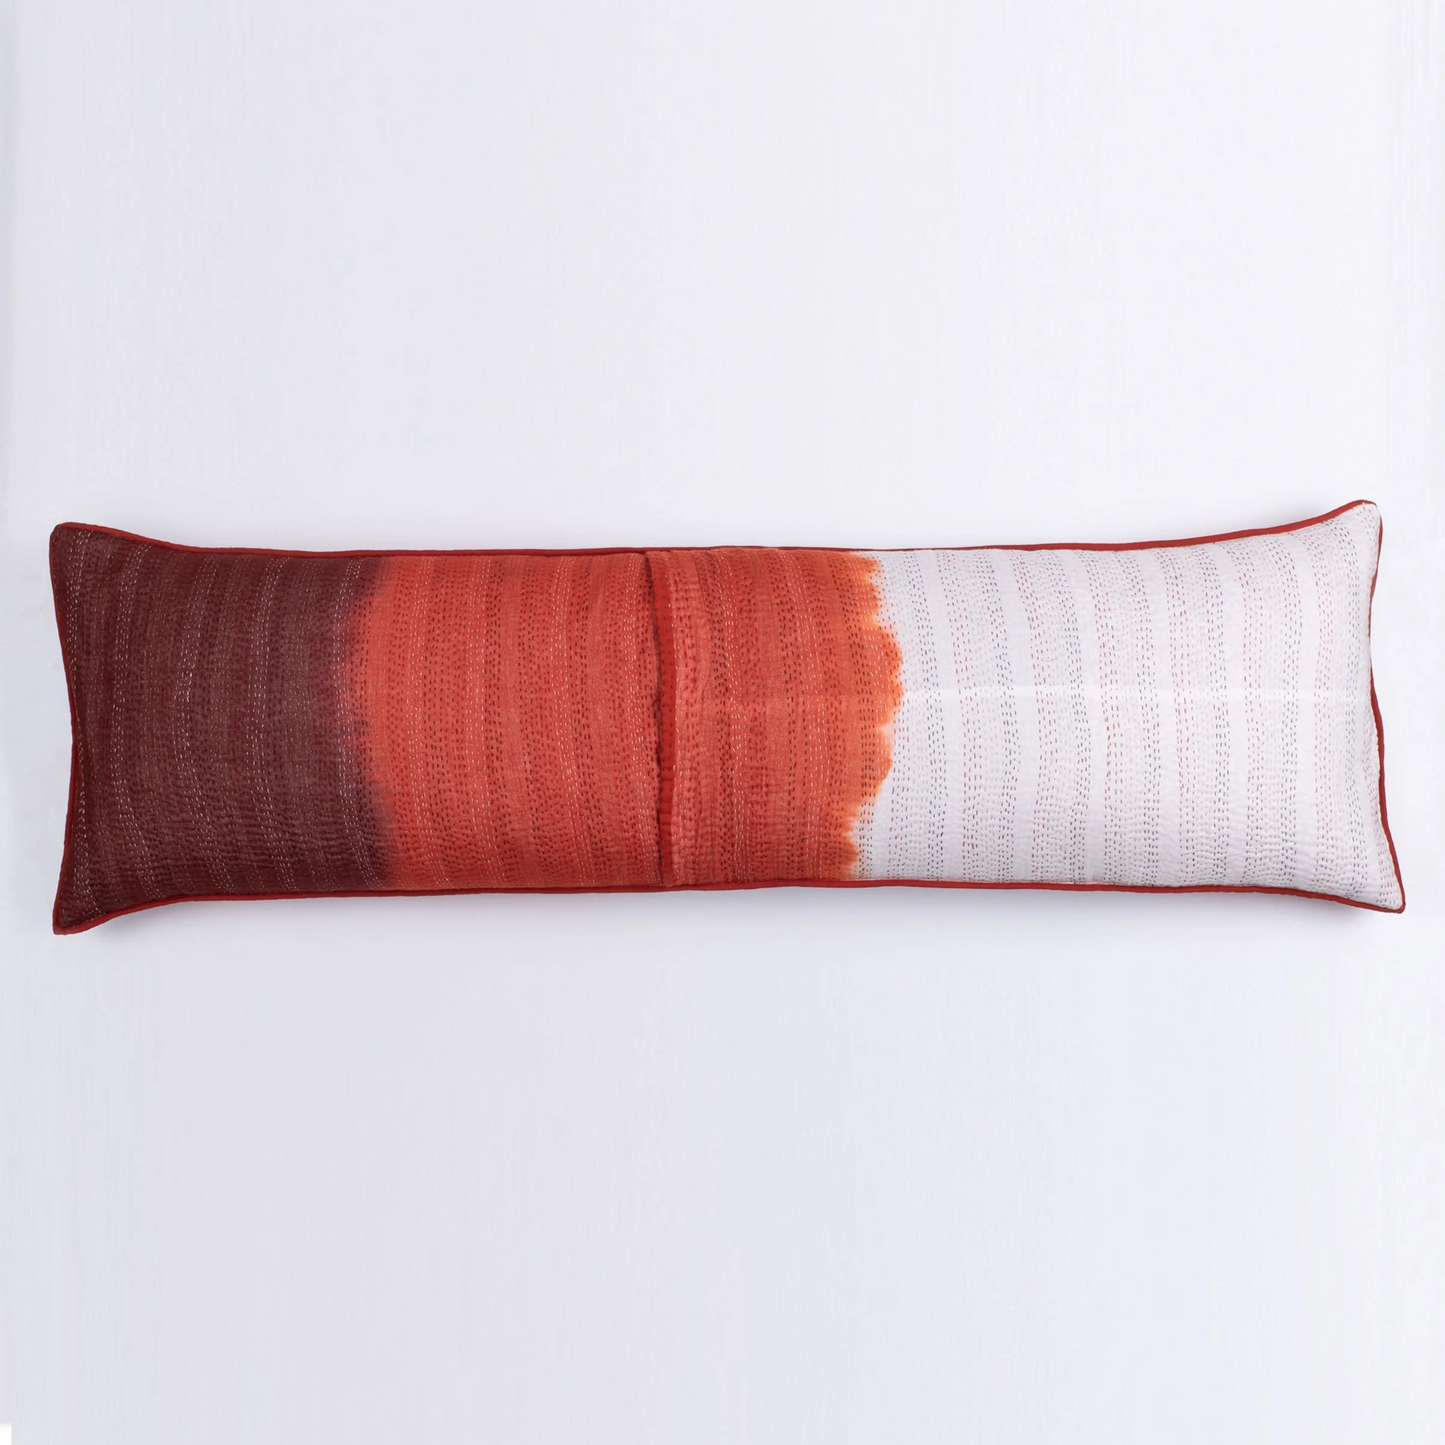 Kimono Cotton Kantha Lumber Pillows -Gray -